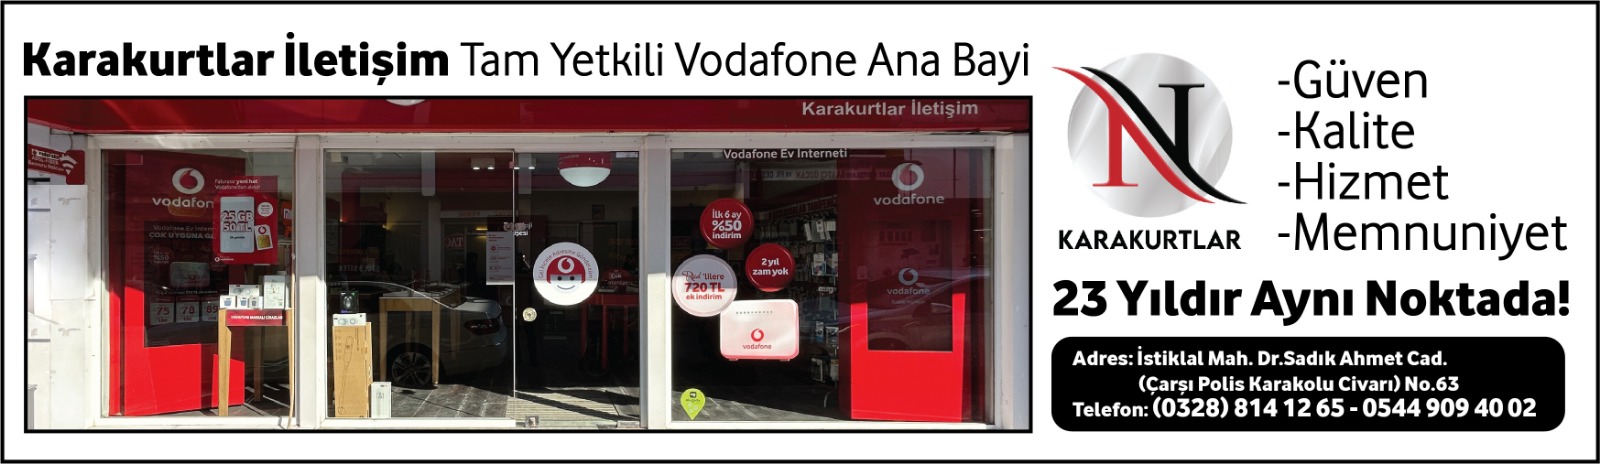 Karakurtlar Vodafone